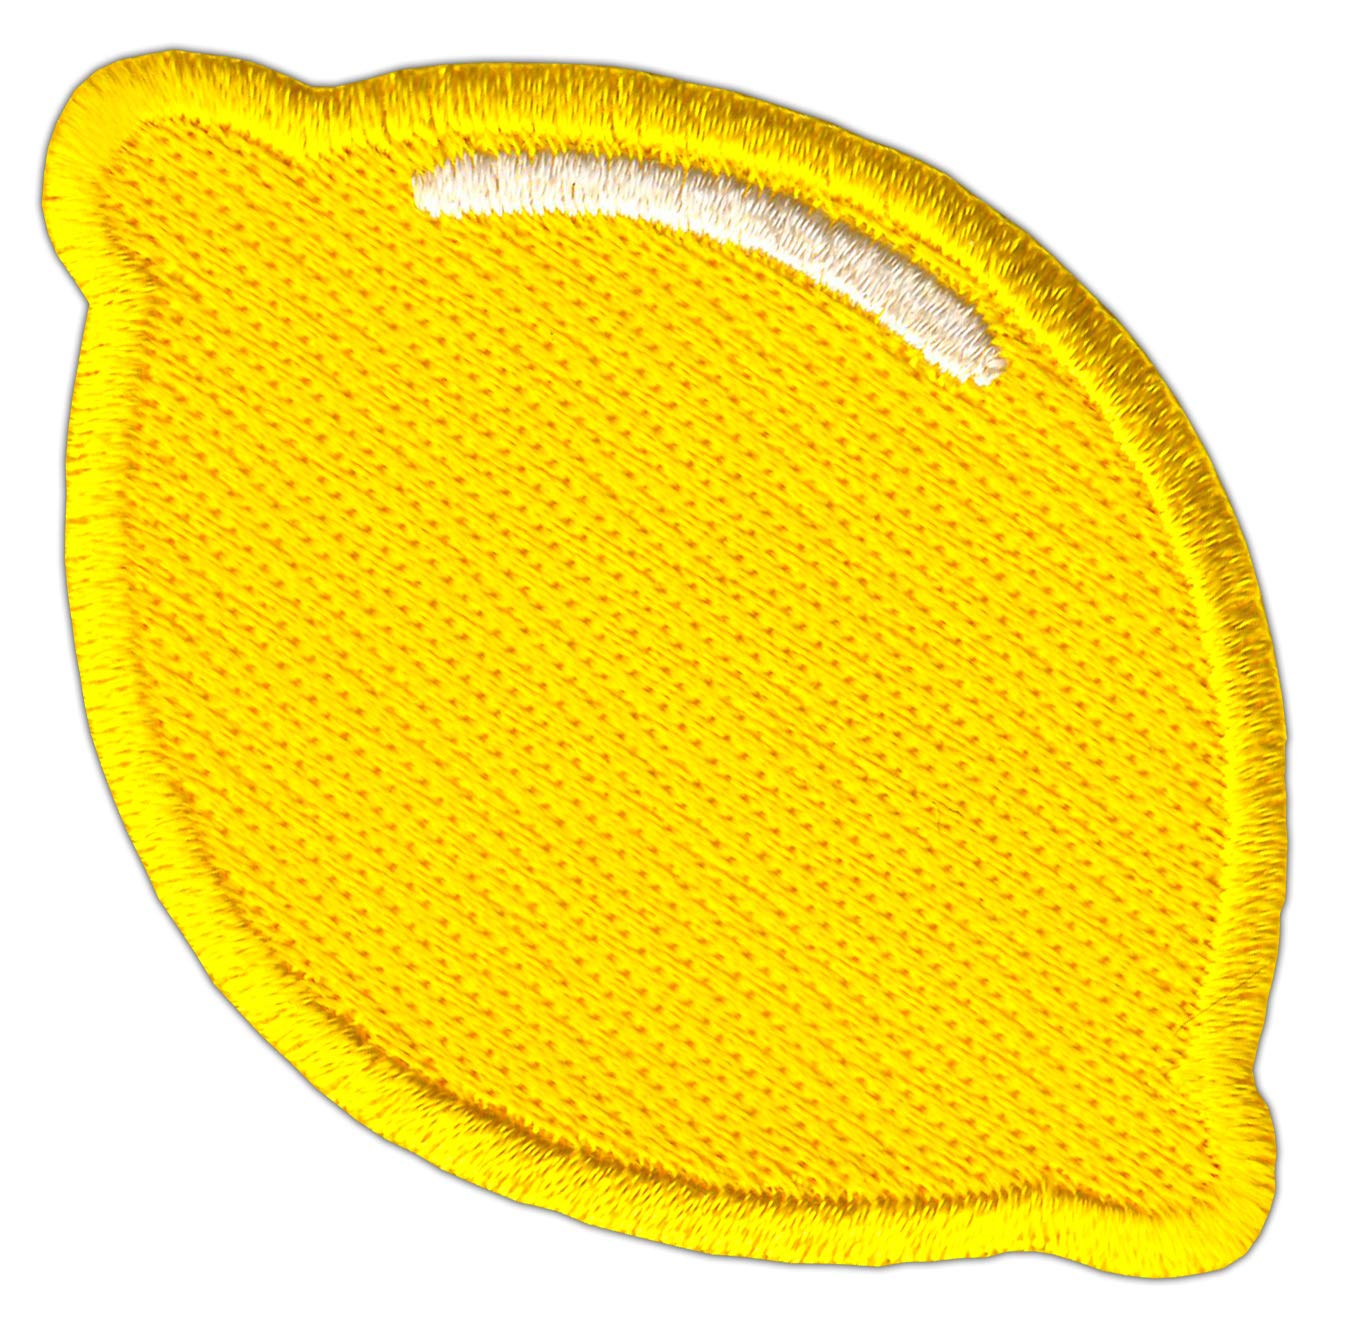 Bestellmich Zitrone Zitrusfrucht Gelb Aufnäher Bügelbild Patch Applikation Größe 7,0 x 4,8 cm von Bestellmich